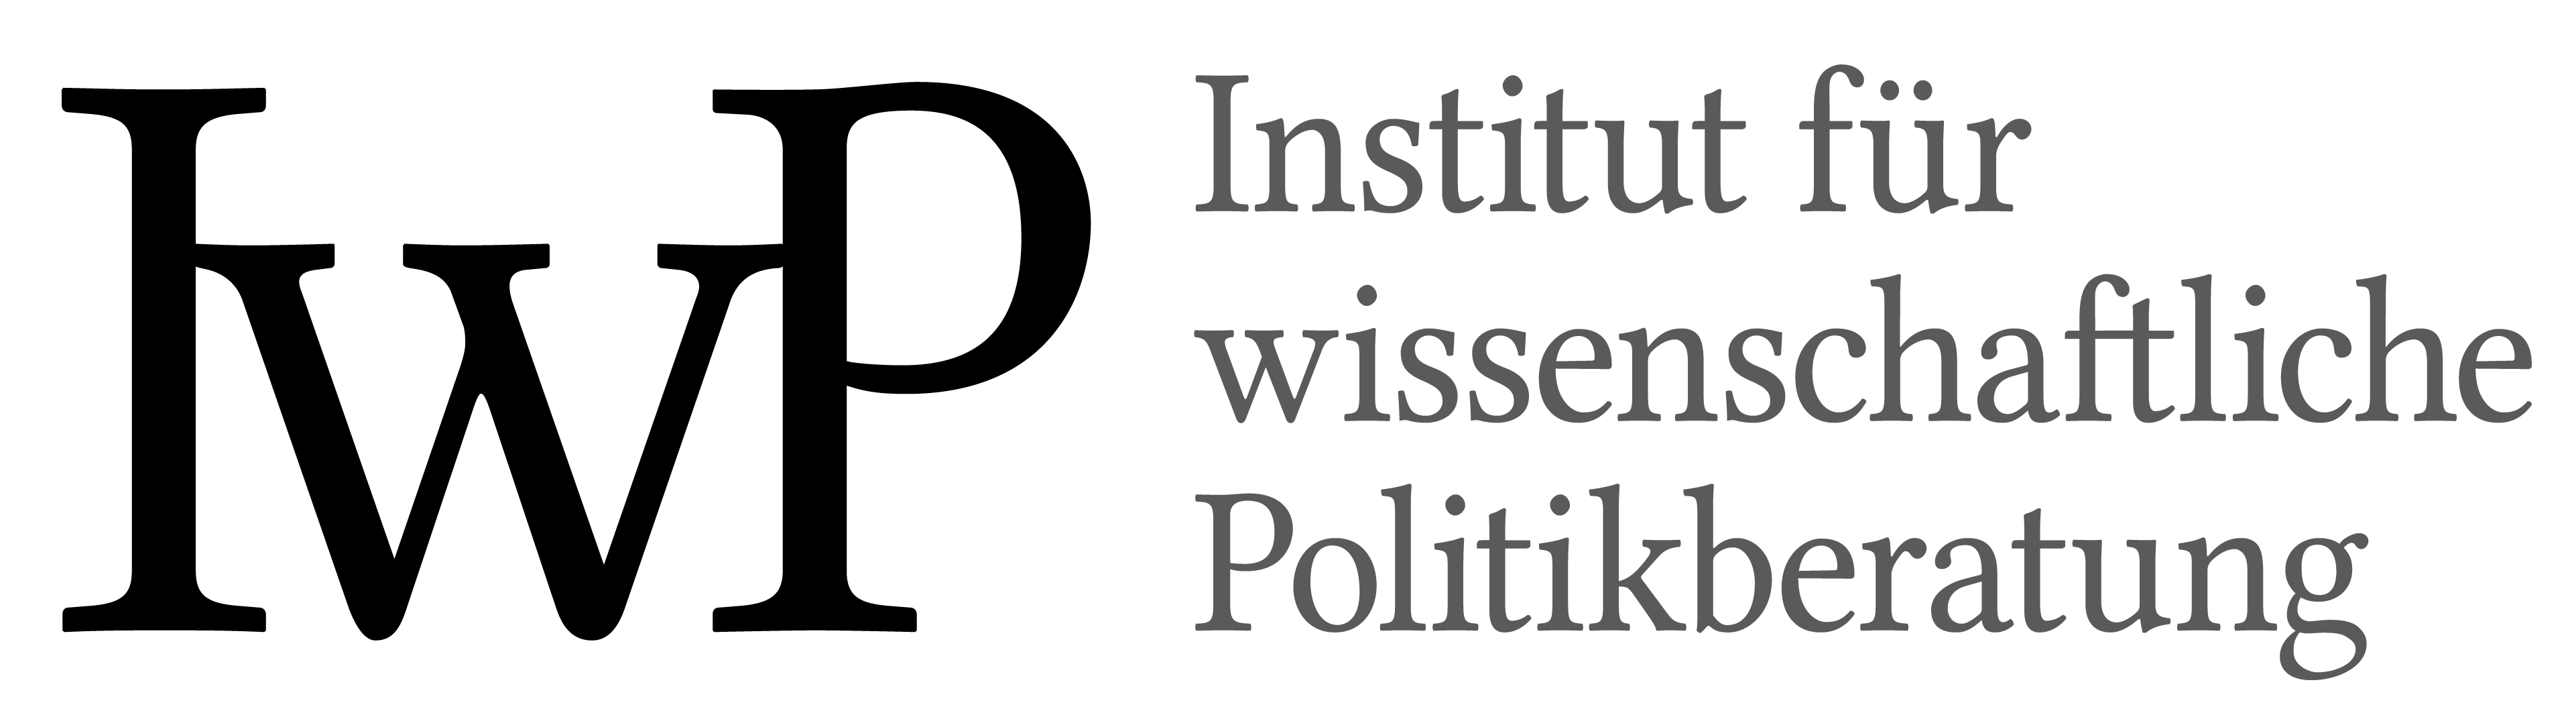 Institut für wissenschaftliche Politikberatung e.V.